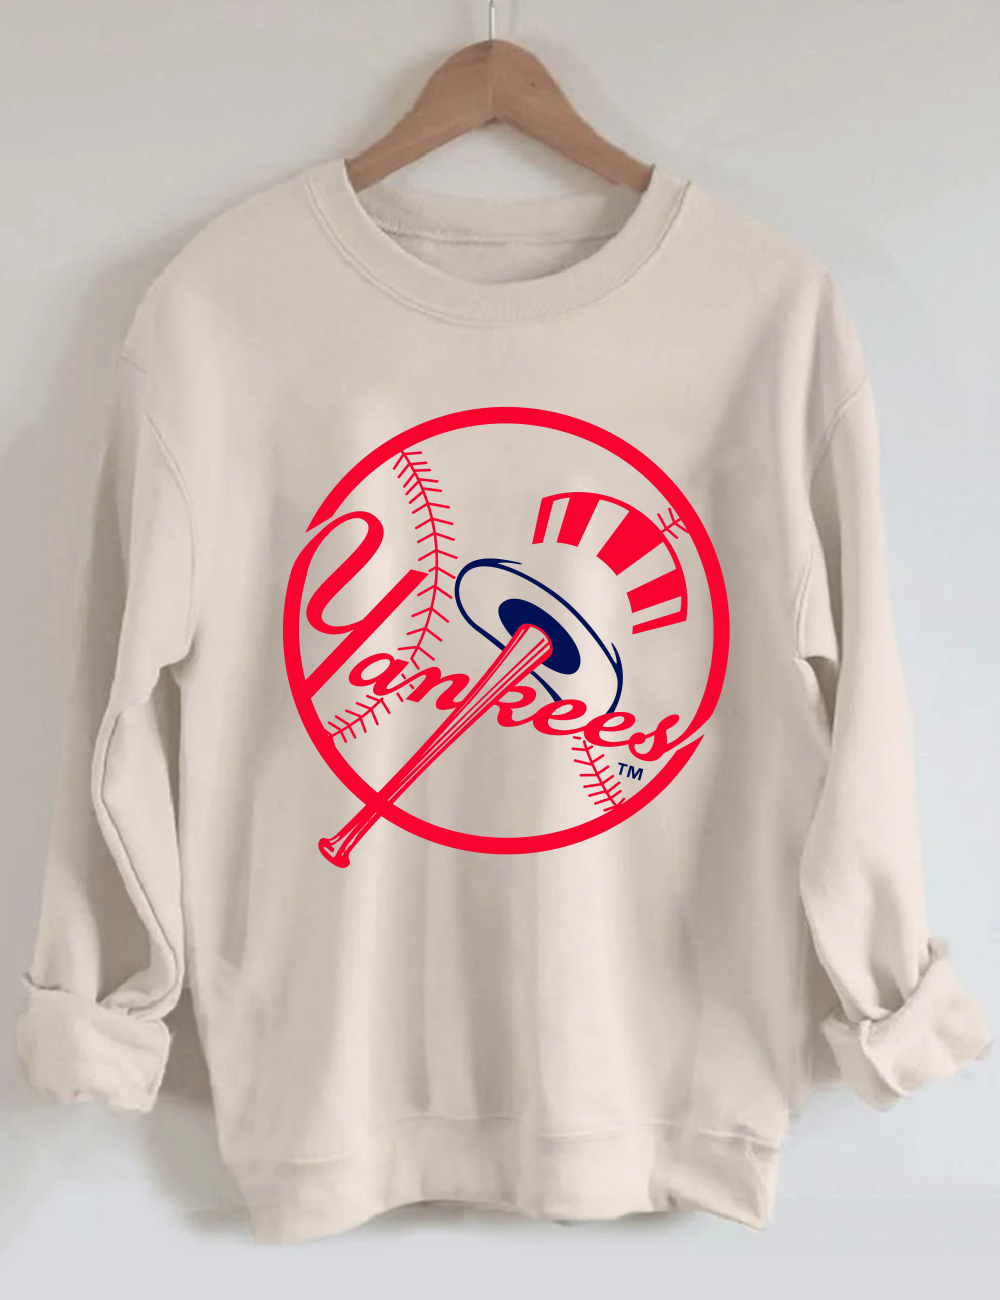 New York Yankees Baseball Sweatshirt